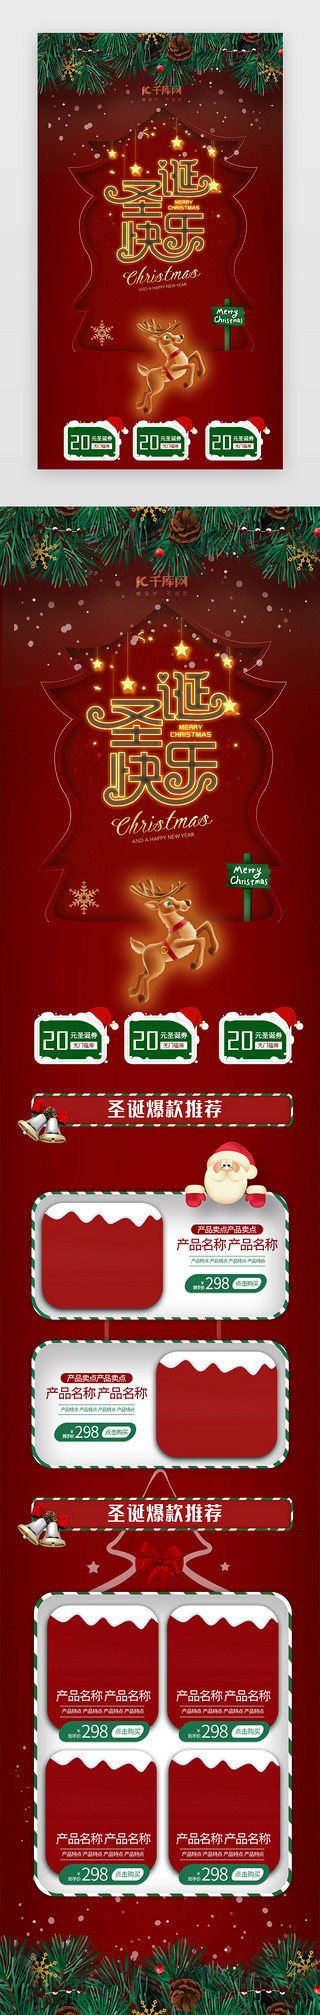 圣诞节大促UI设计素材_红色圣诞节电商促销h5